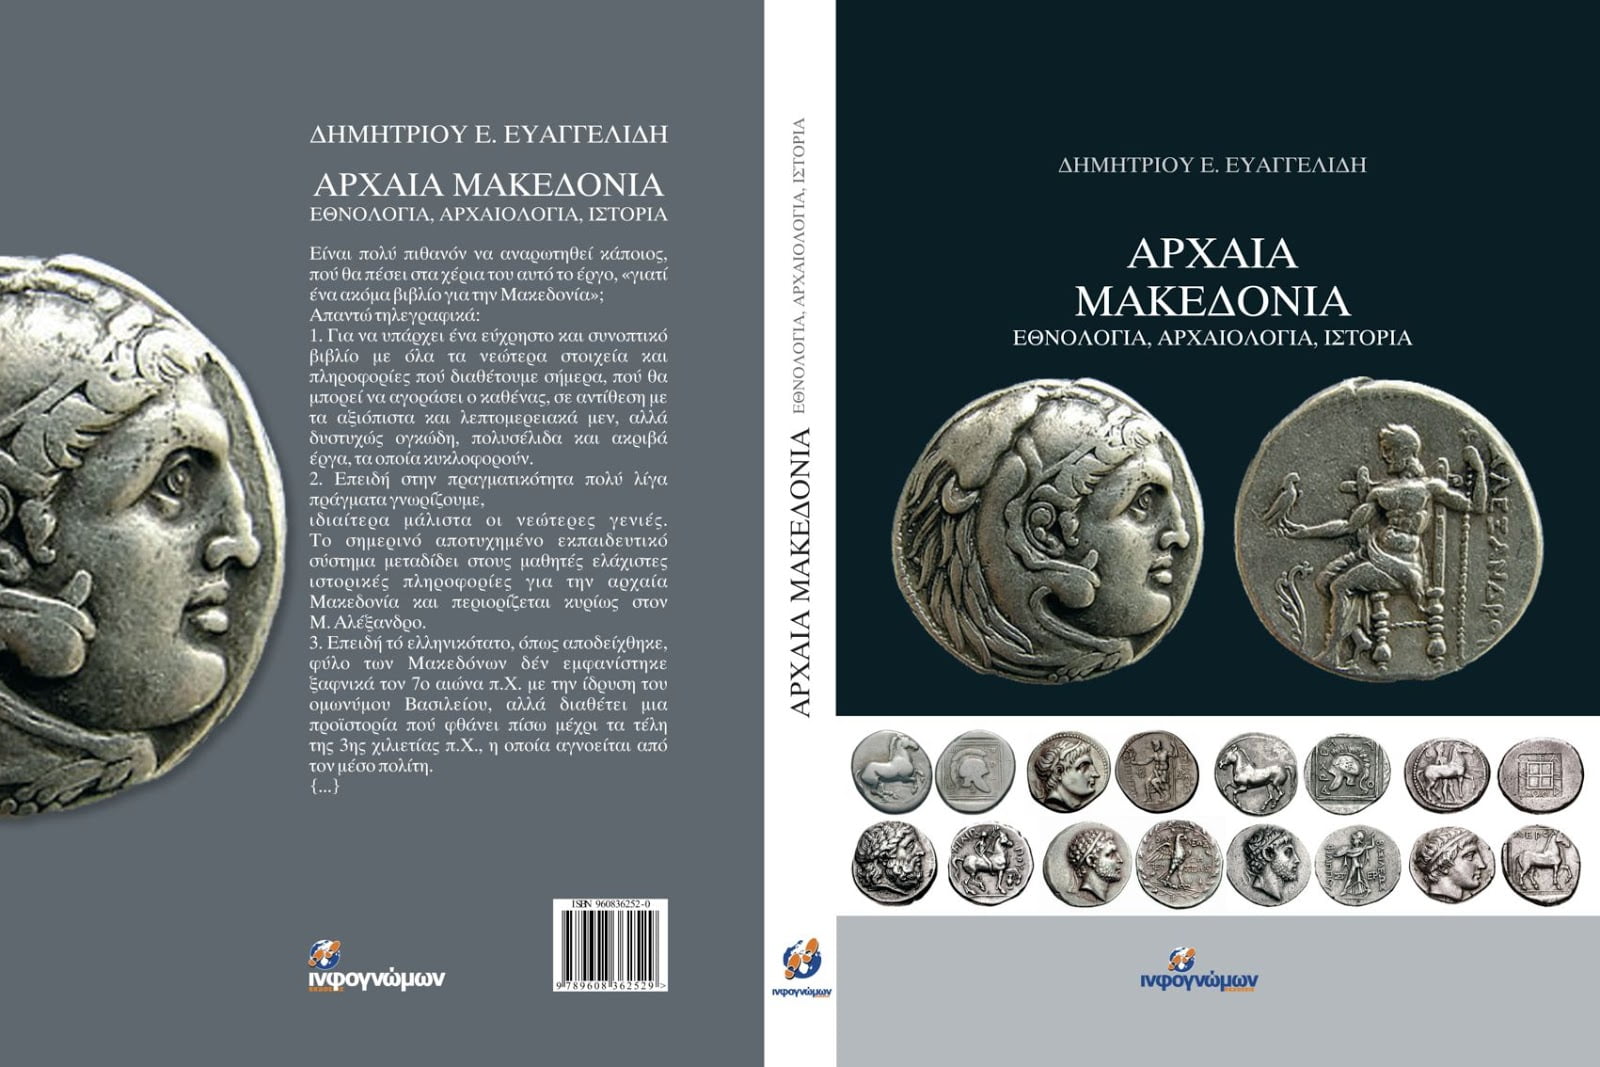 Δύο εκδόσεις για τη Μακεδονία – Να διαβάσουν για να μορφωθούν οι πολιτικοί που ετοιμάζονται για τις… μεγάλες υπογραφές